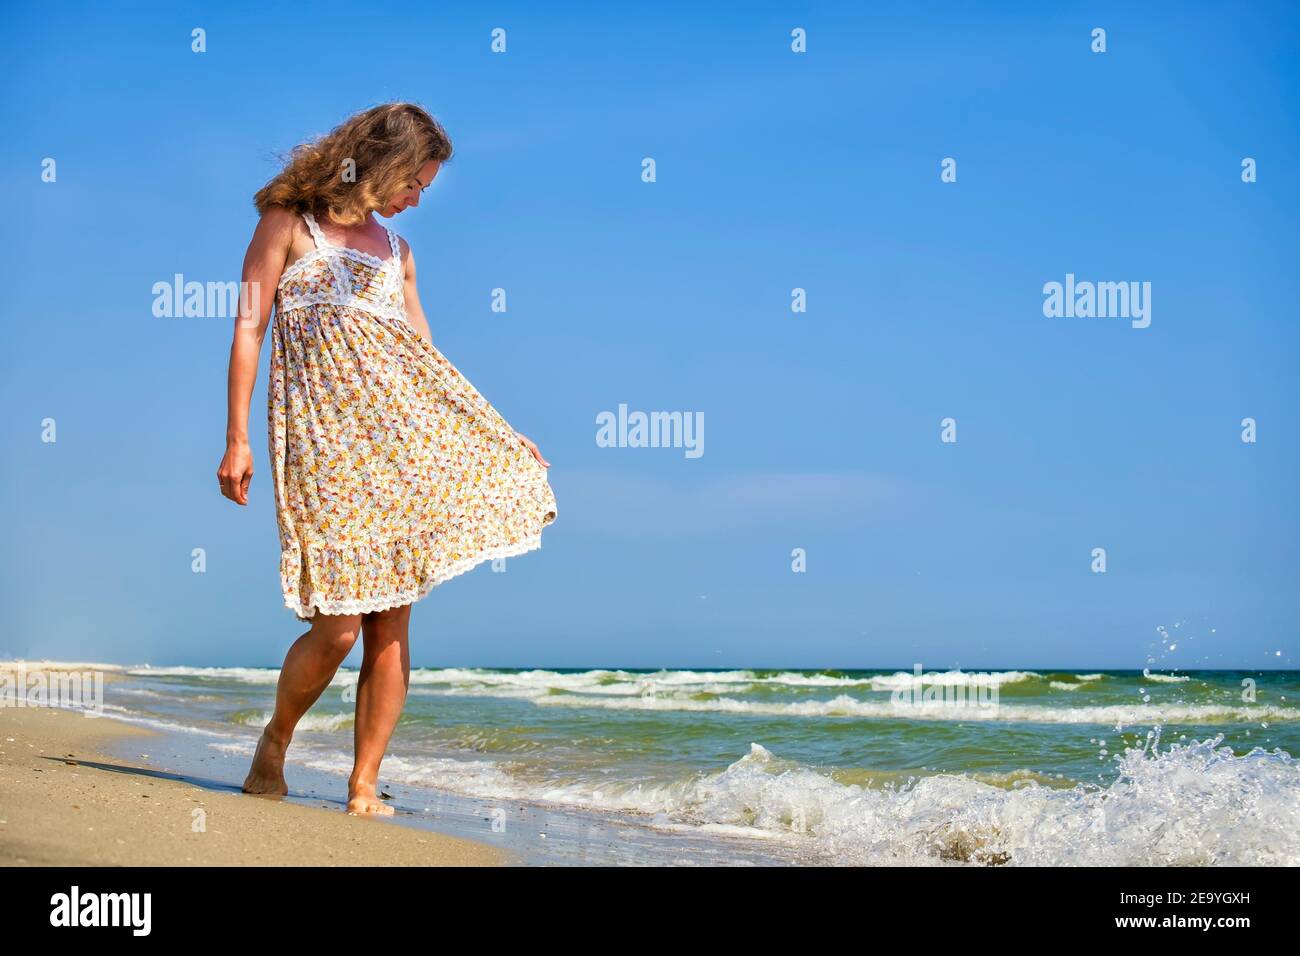 Une jeune fille en robe fleurie se tient sur la mer la tête vers le bas Banque D'Images